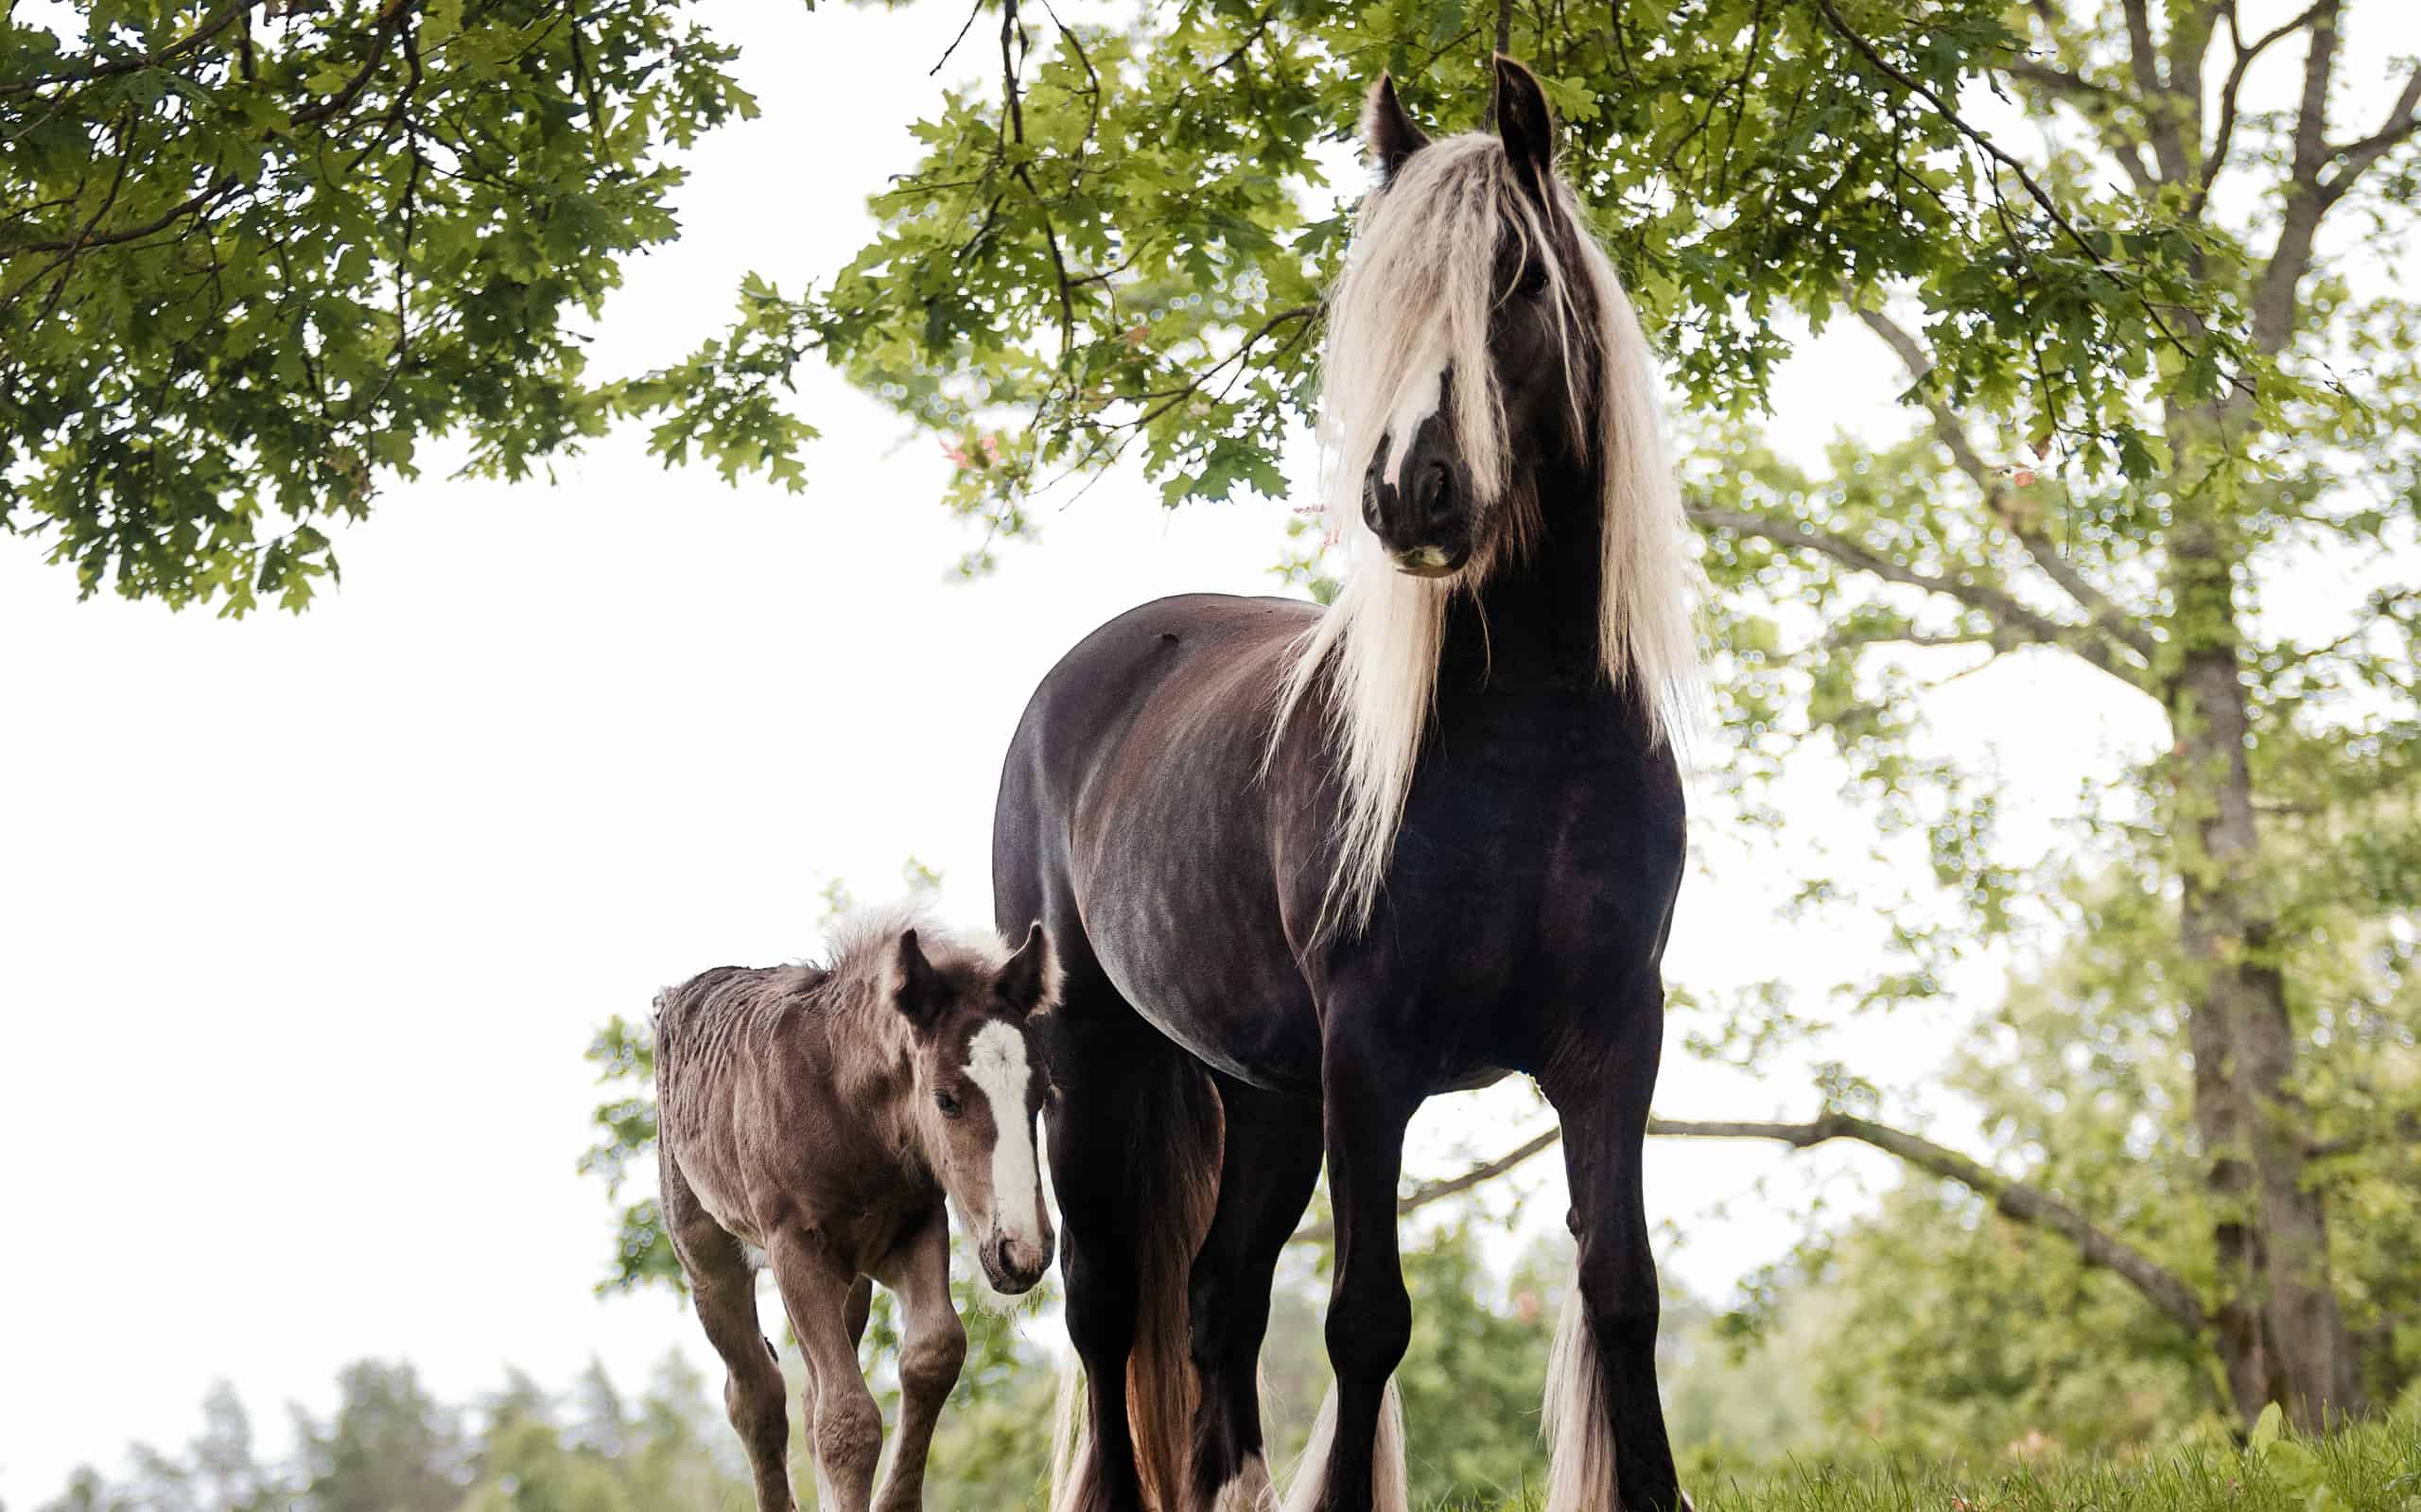 perlino vs cremello horse color